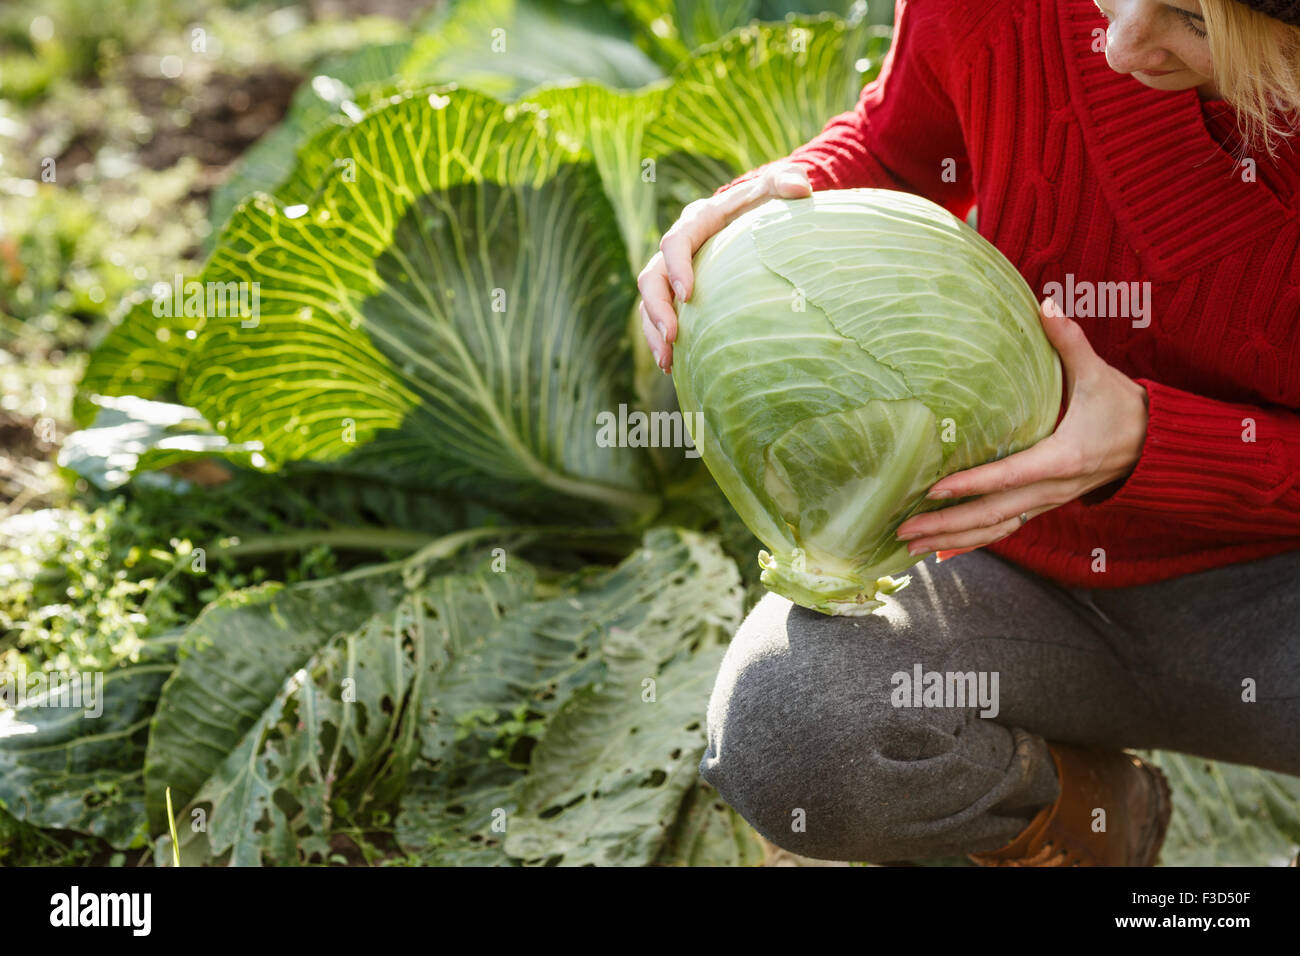 Frau hält und prüft einen frisch gepflückten geschälten Kohl.  Ernte, lokale Landwirtschaft, Locavore Movenet Konzept Stockfoto